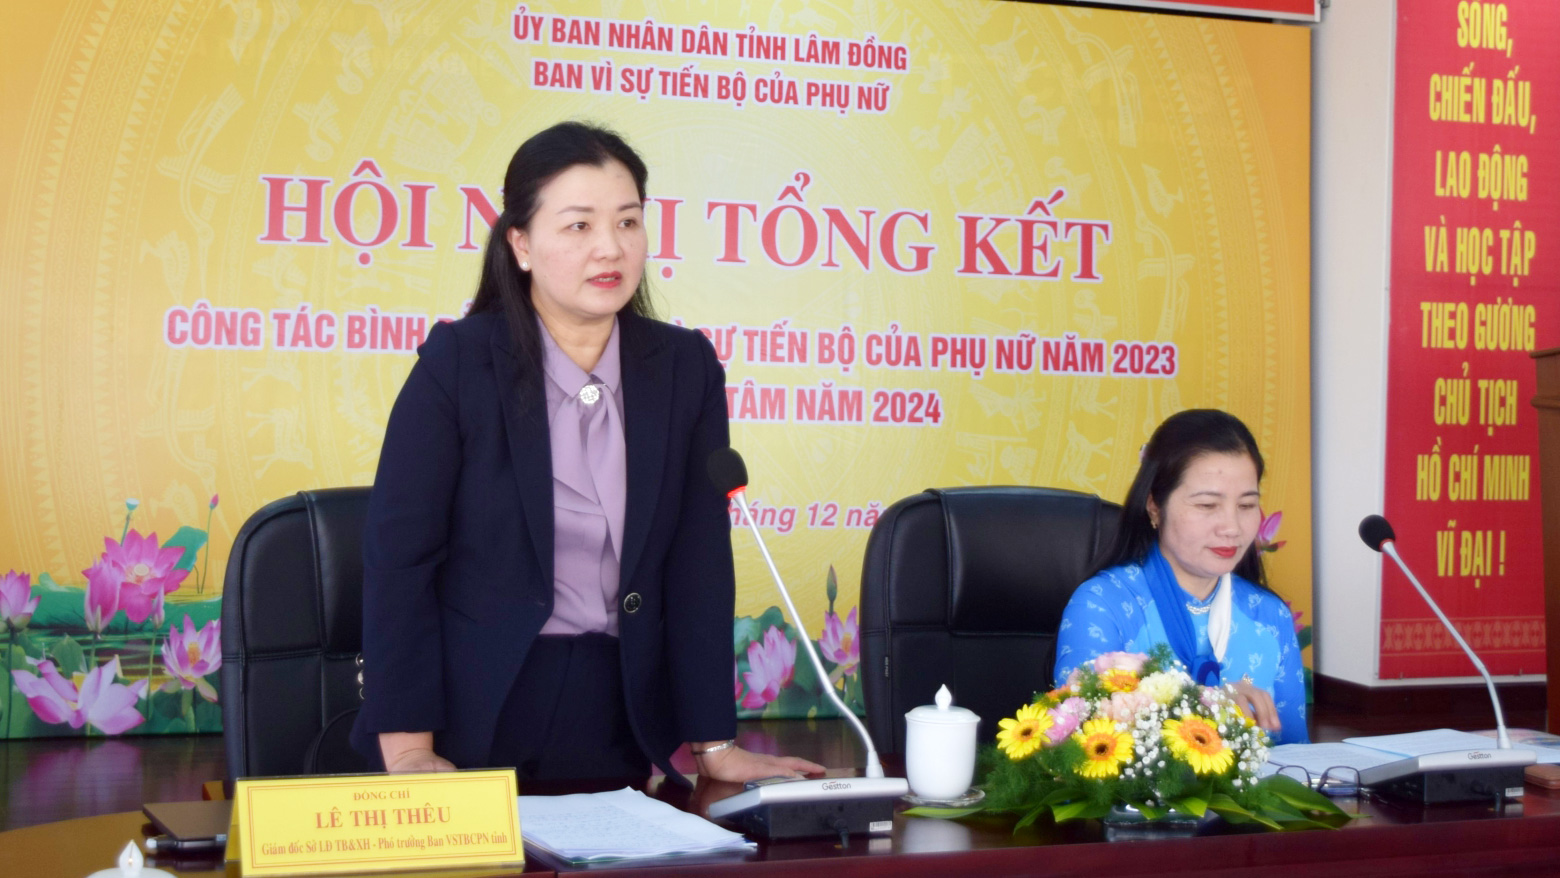 Đồng chí Lê Thị Thêu – Giám đốc Sở Lao động – Thương binh và Xã hội, Phó Trưởng Ban Thường trực Ban Vì sự tiến bộ của phụ nữ, phát biểu tại hội nghị